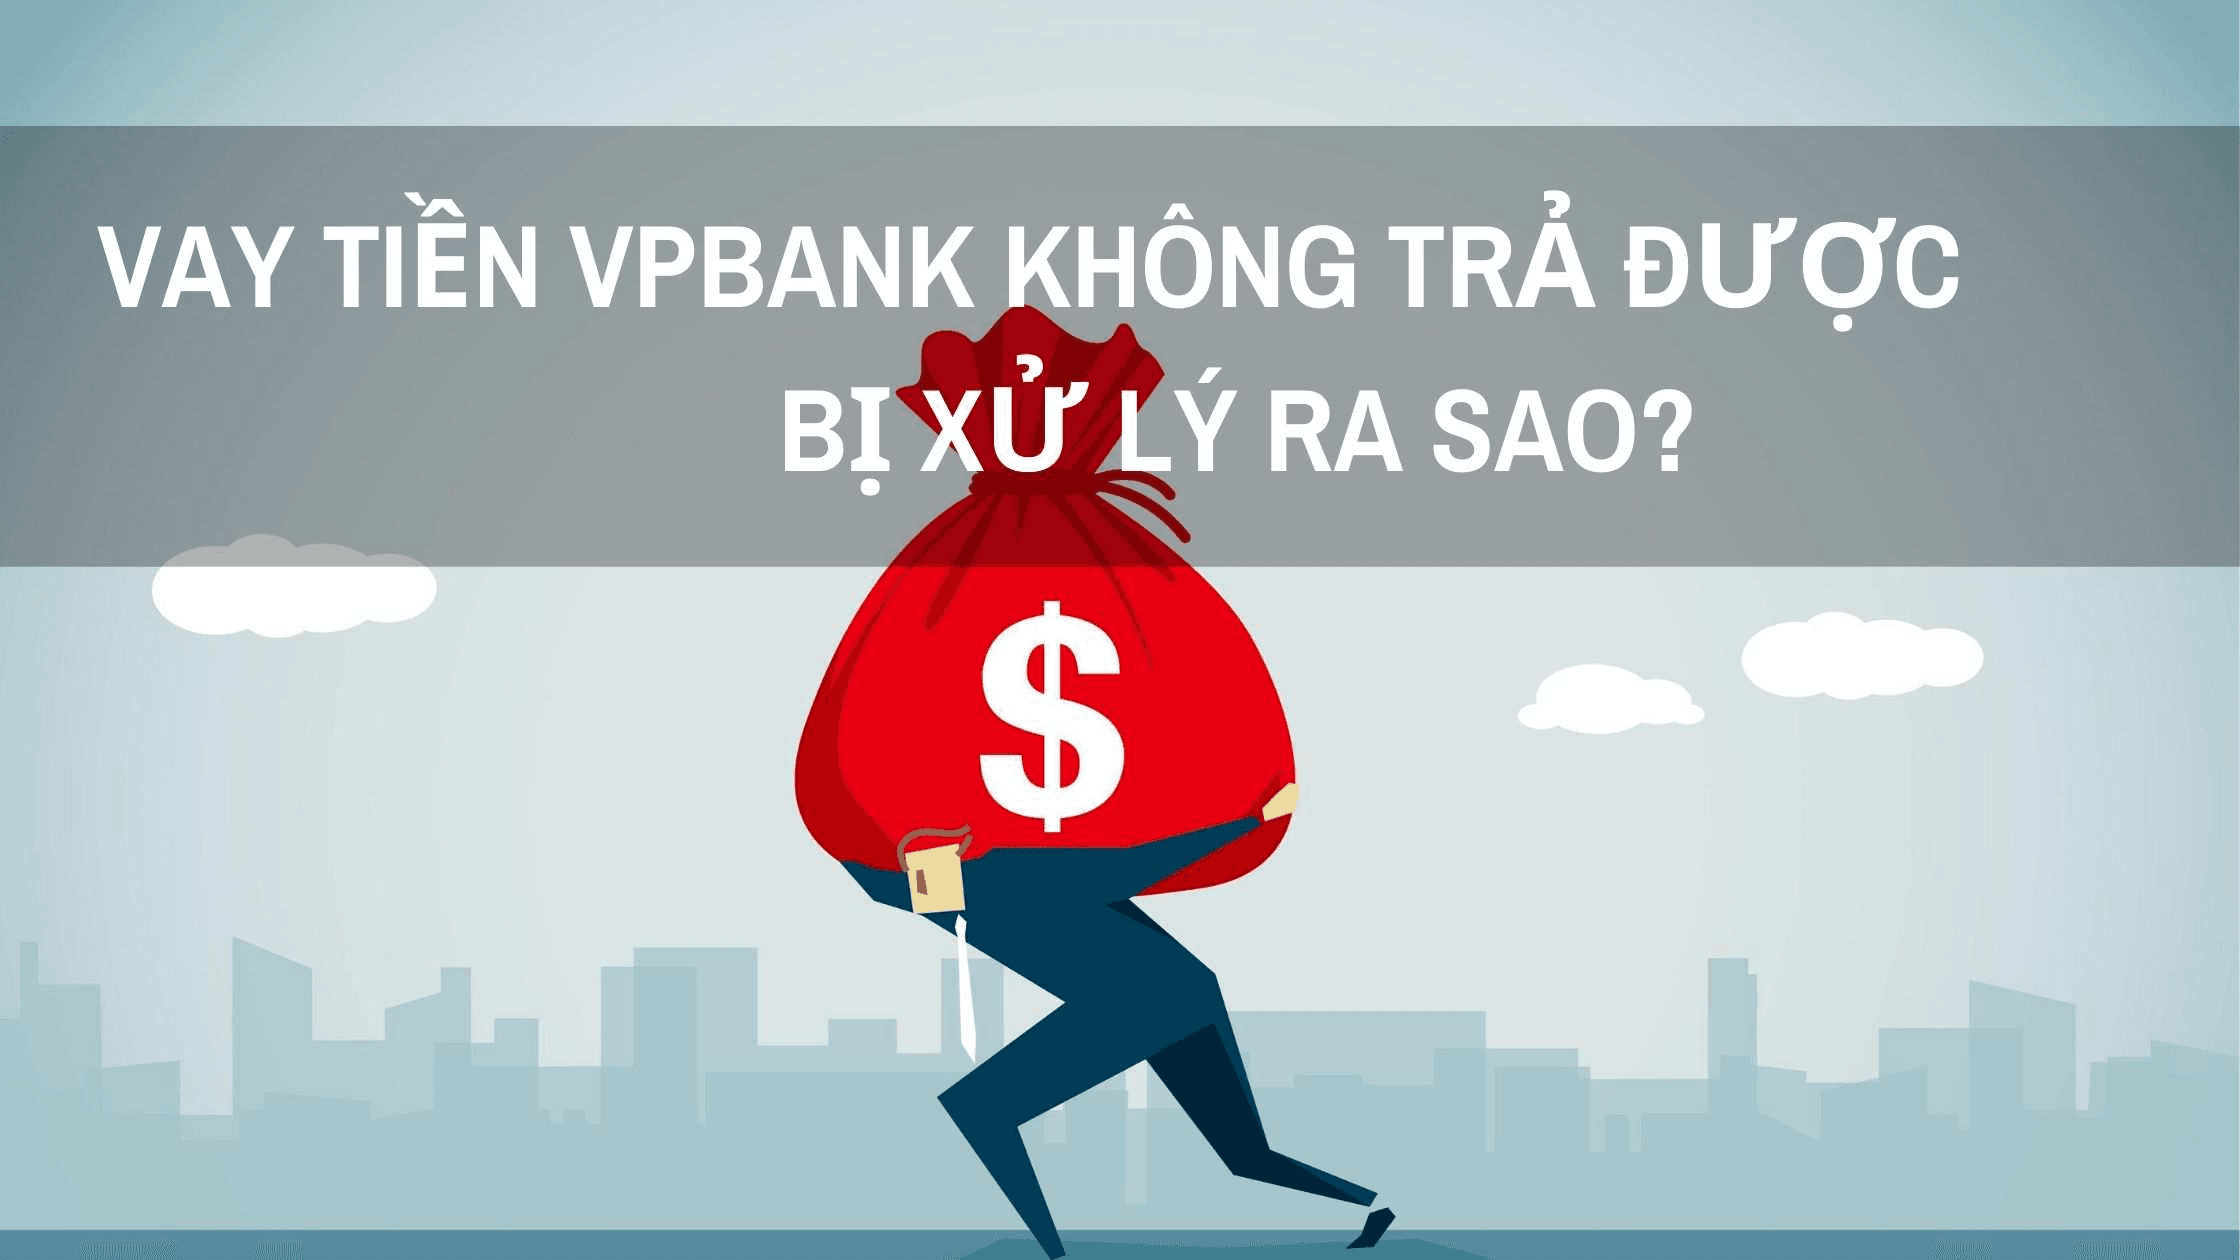 thebank_vay_tien_vpbank_khong_tra_duoc_1598350322